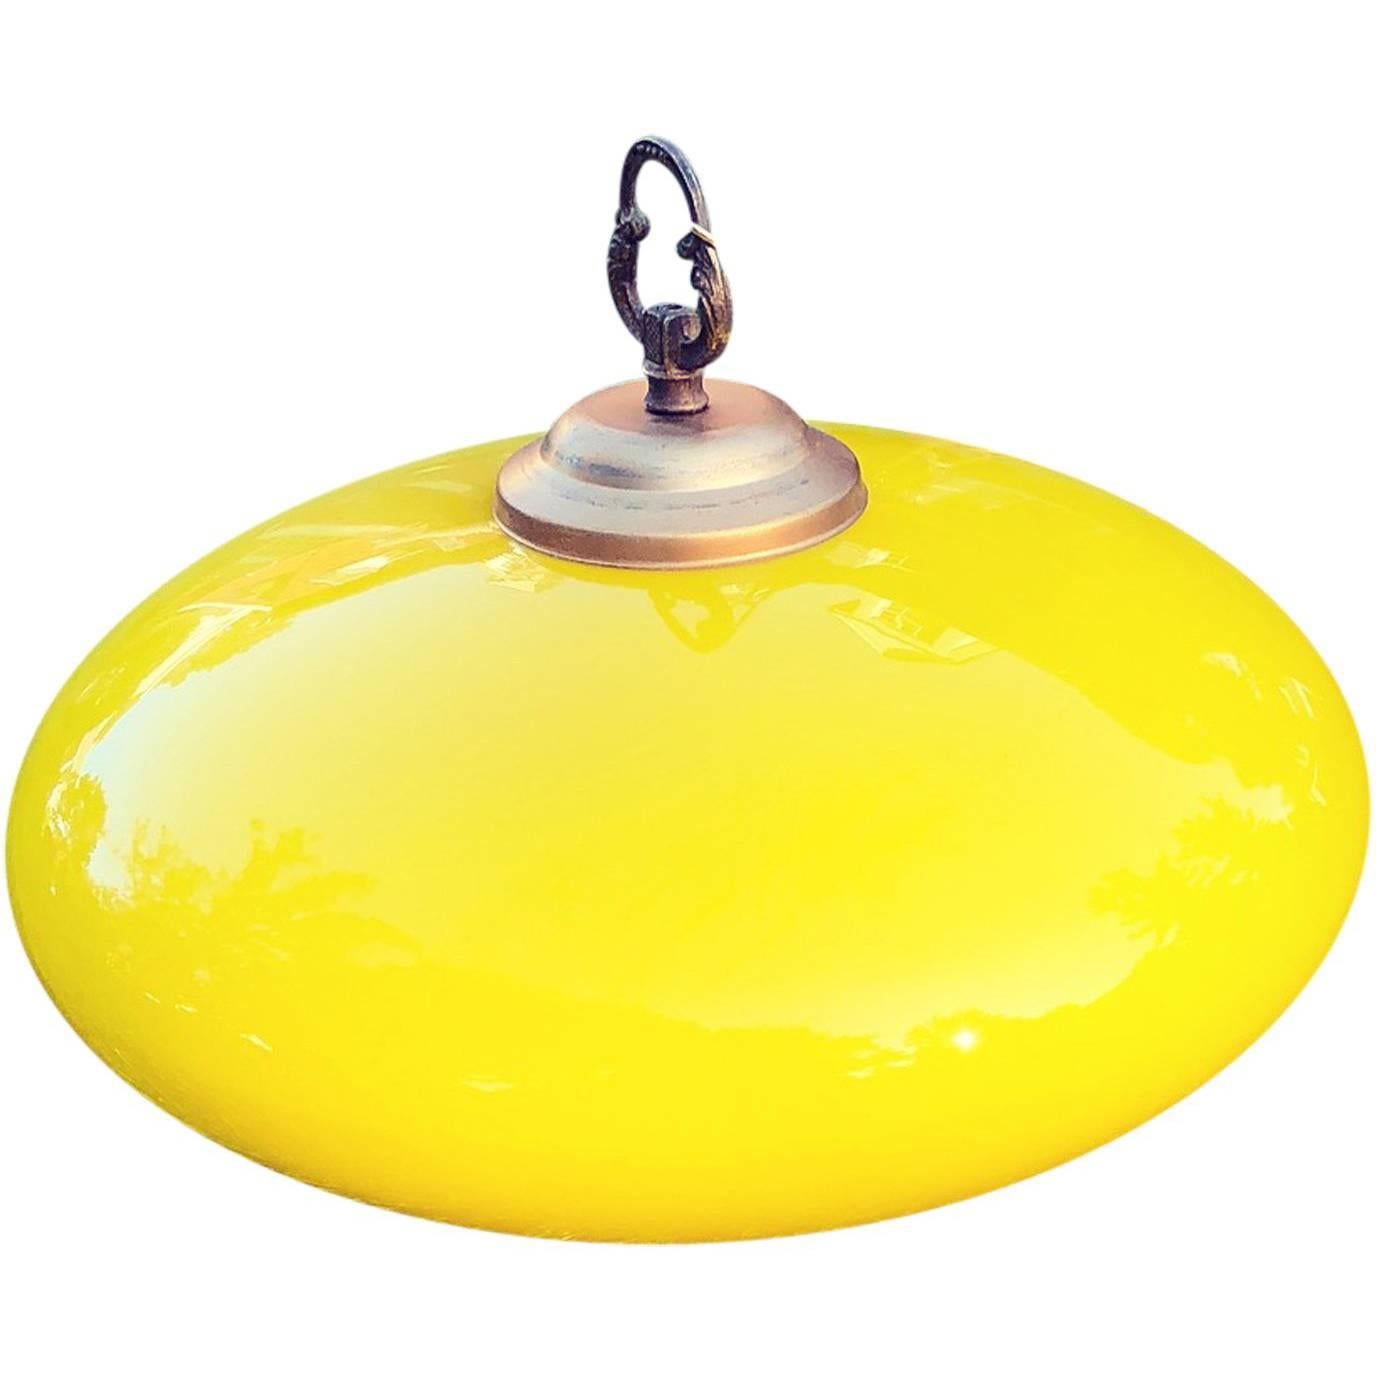 Vieux pendentif italien en verre jaune vif

Le recâblage UL, la canopée et la chaîne de votre choix seront appliqués après le point d'achat sans frais supplémentaires.

      